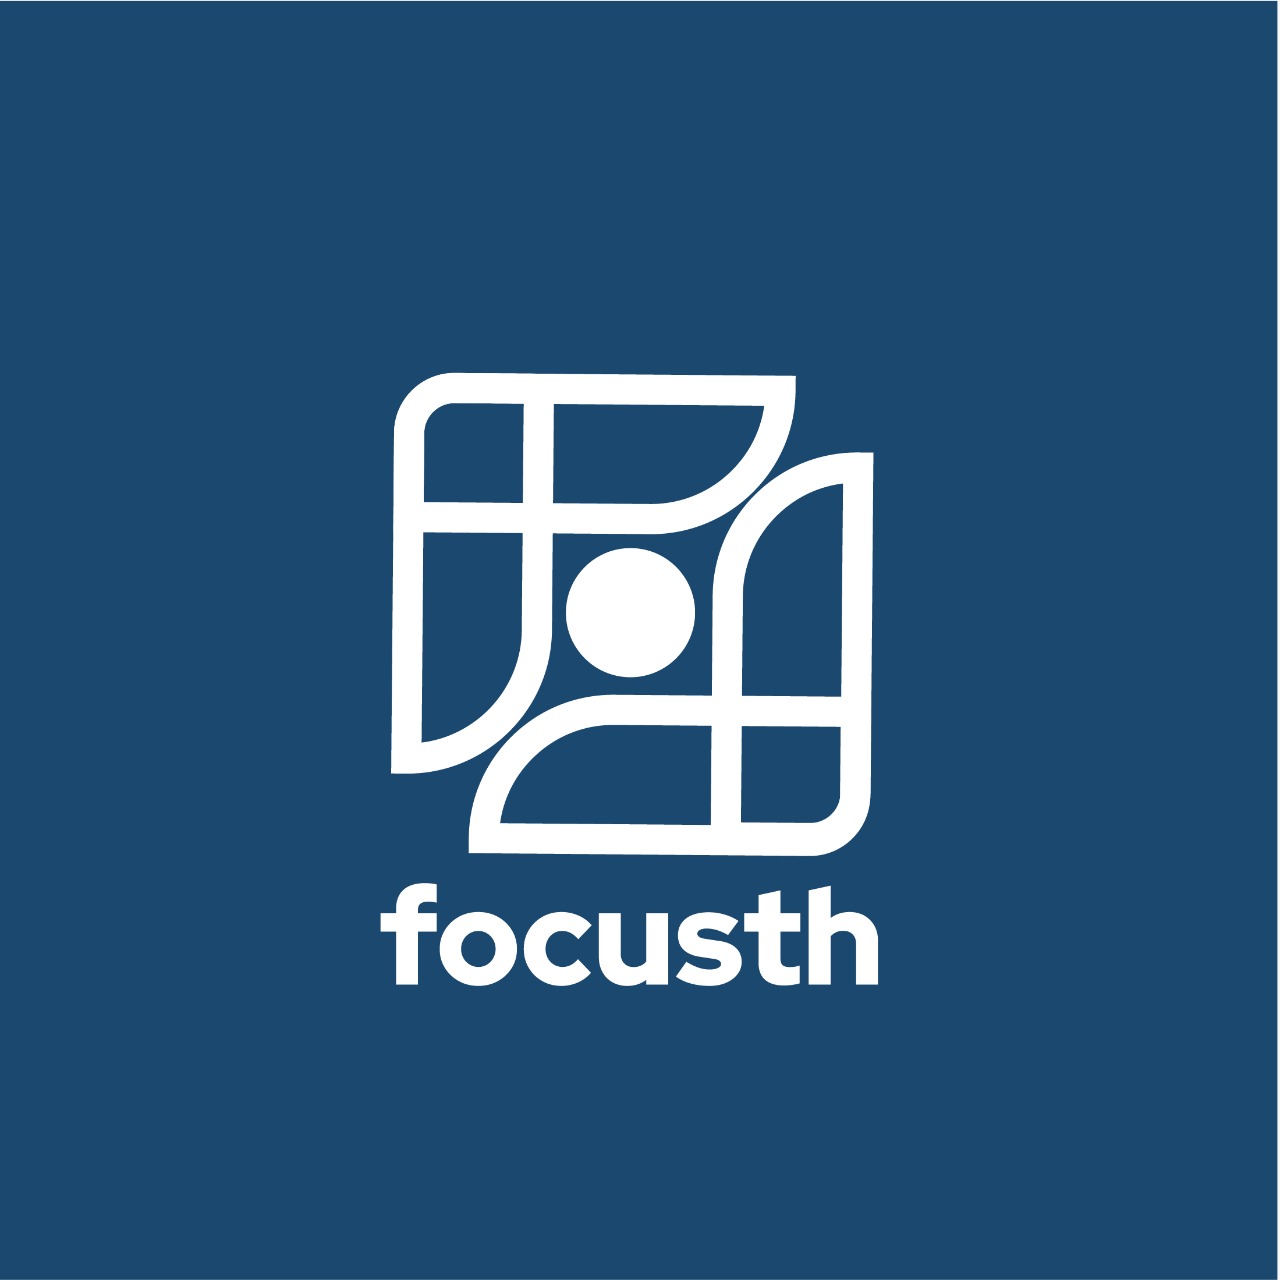 FocusTH